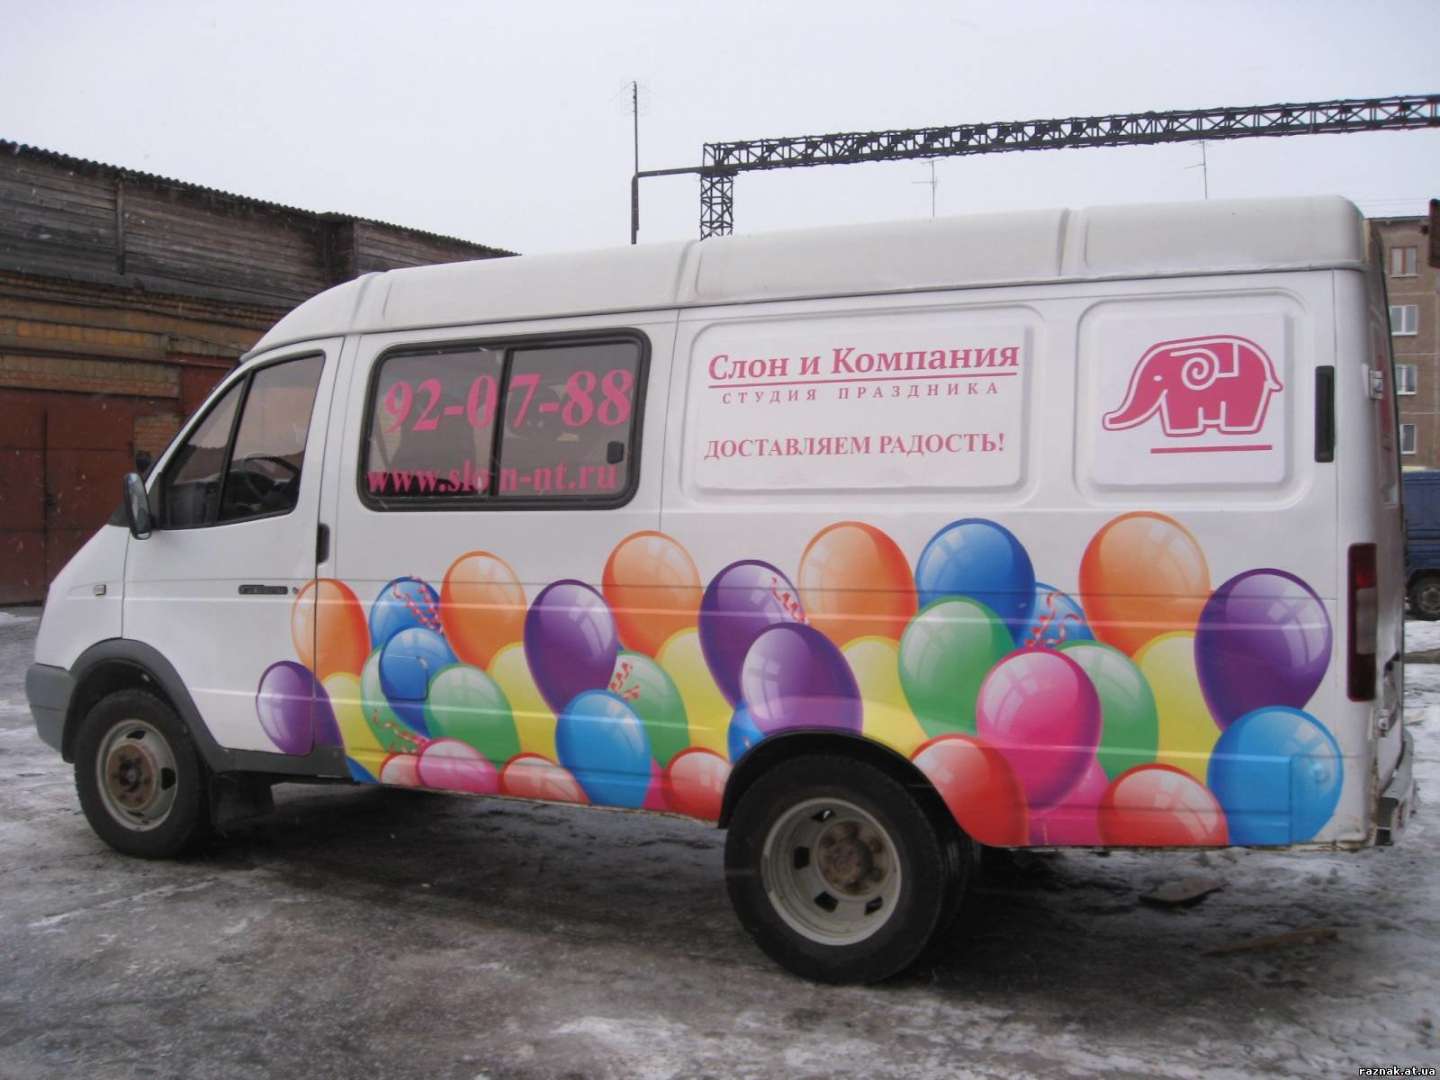 Шары доставка нижний. Машина с шариками. Реклама на машине воздушные шары. Реклама воздушных шаров. Реклама шаров на машине.